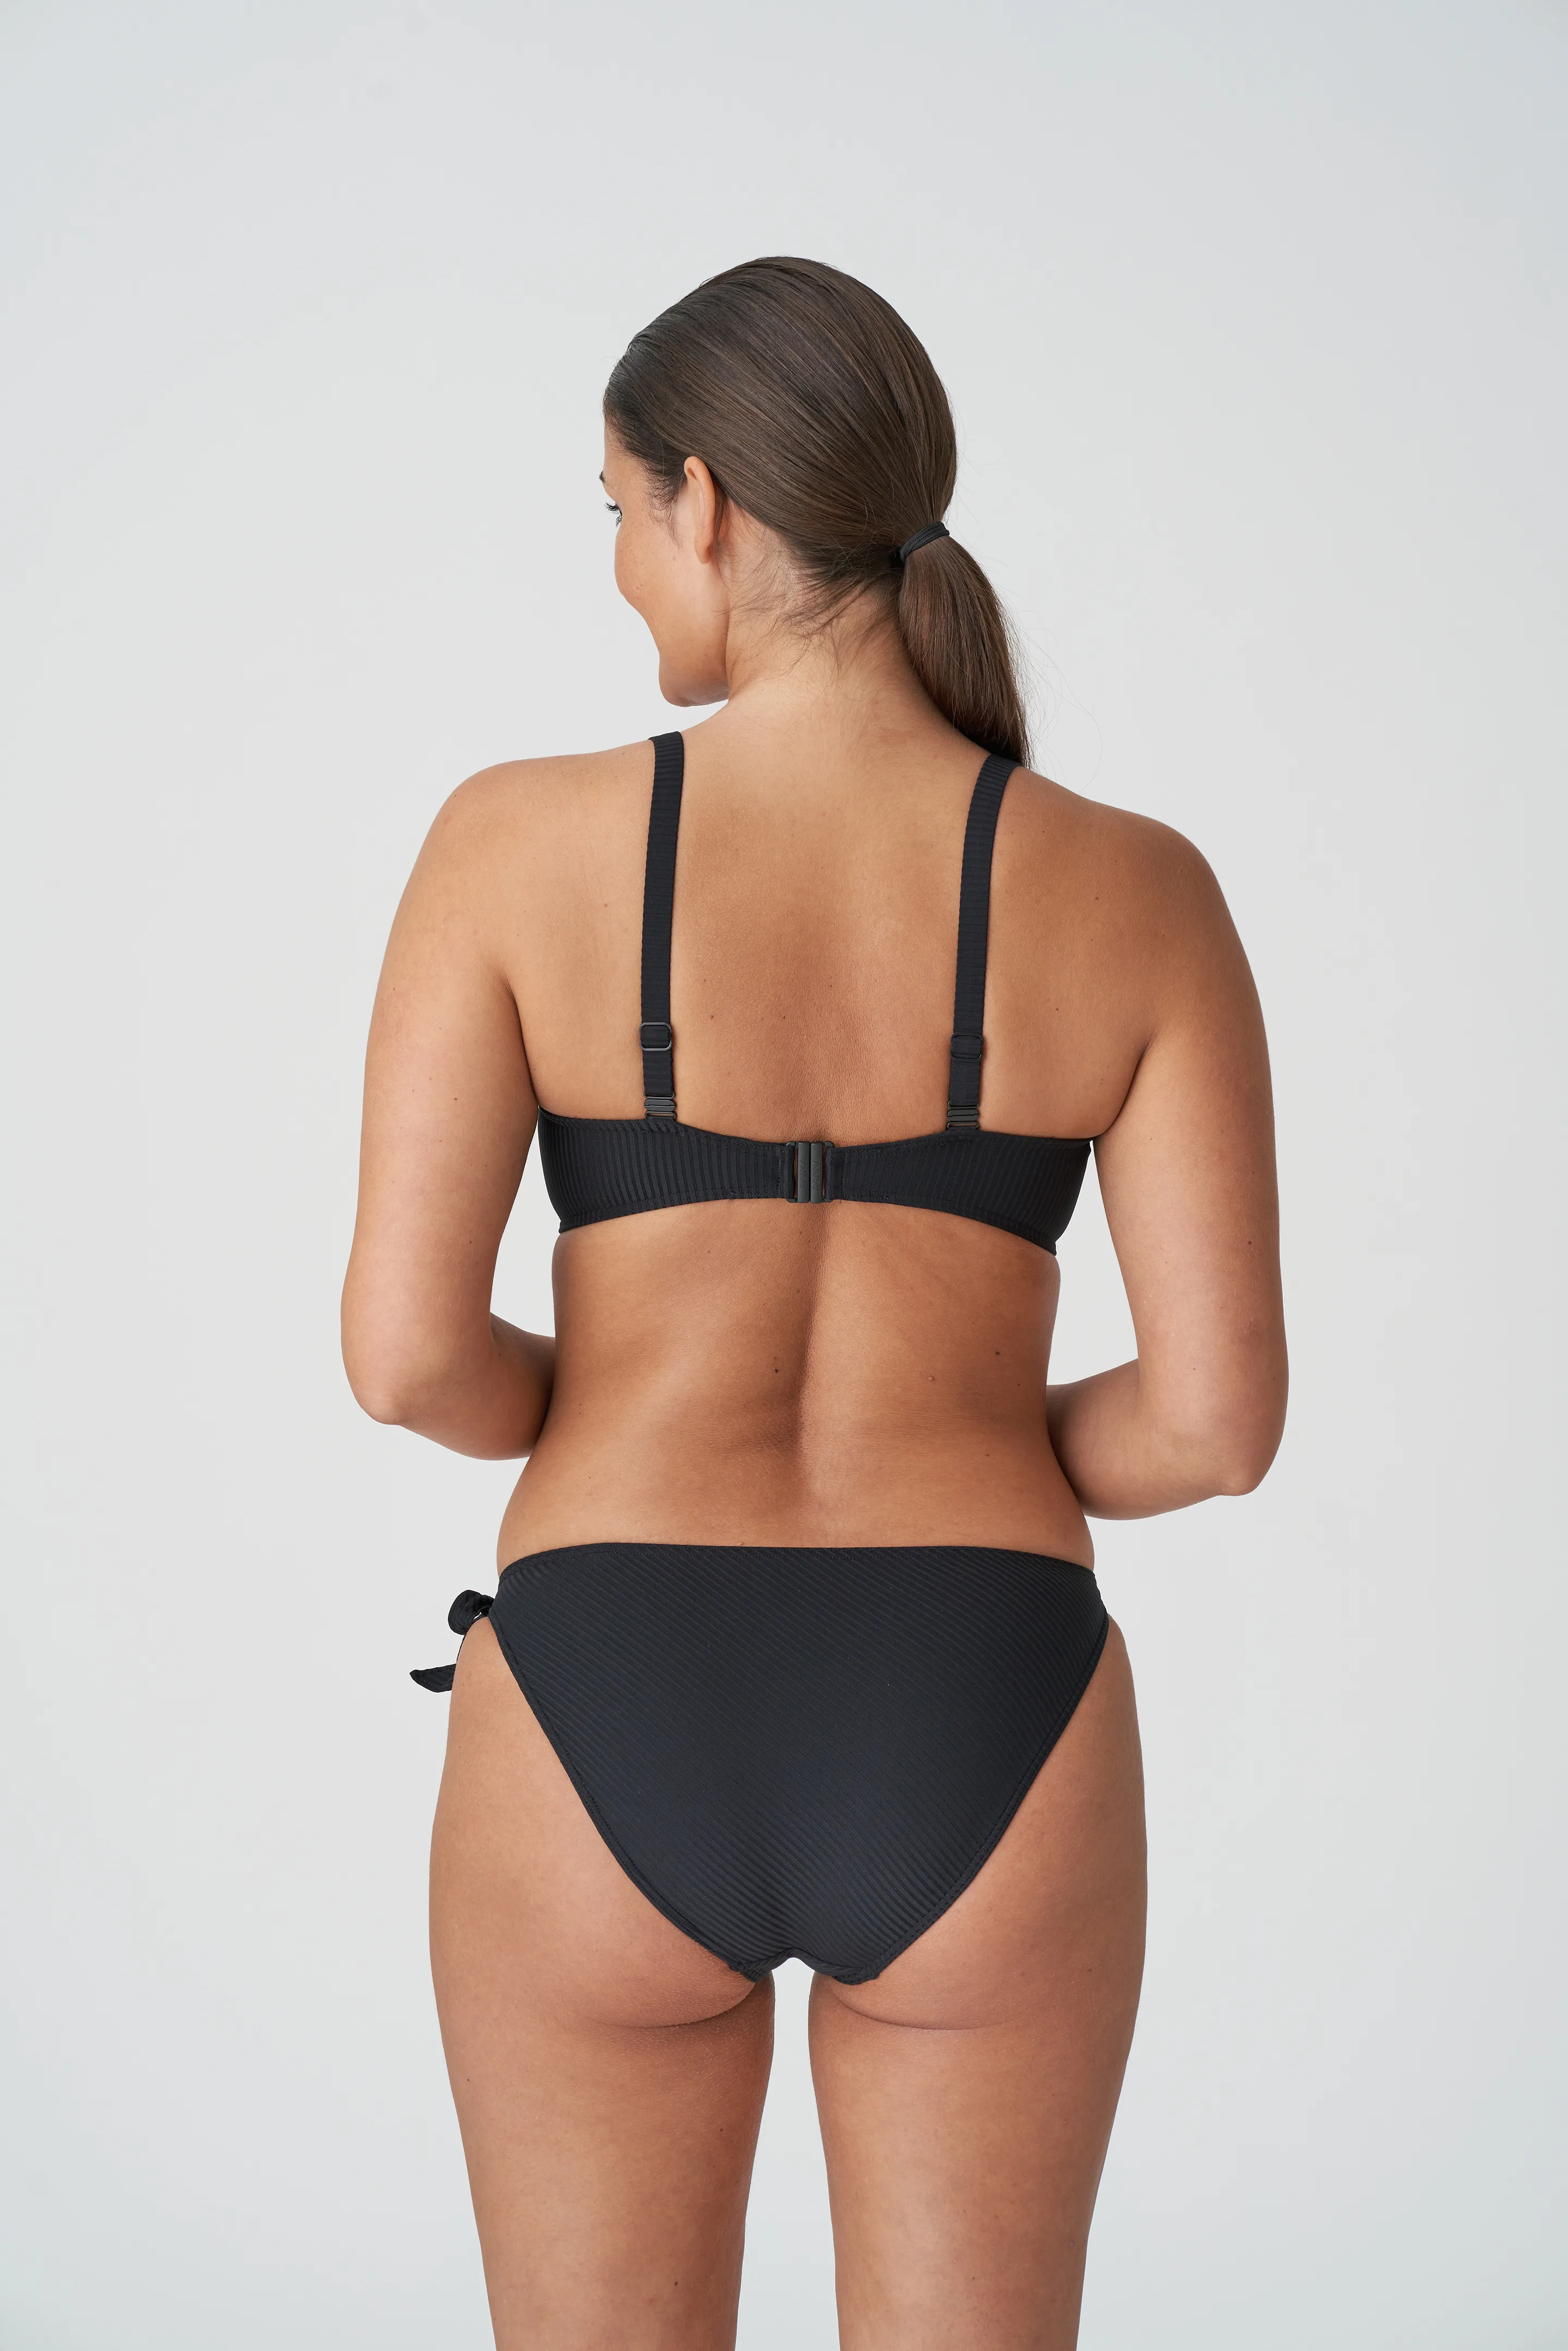 Prima Donna Damietta Full Cup Bikini Top in Black 401-1610